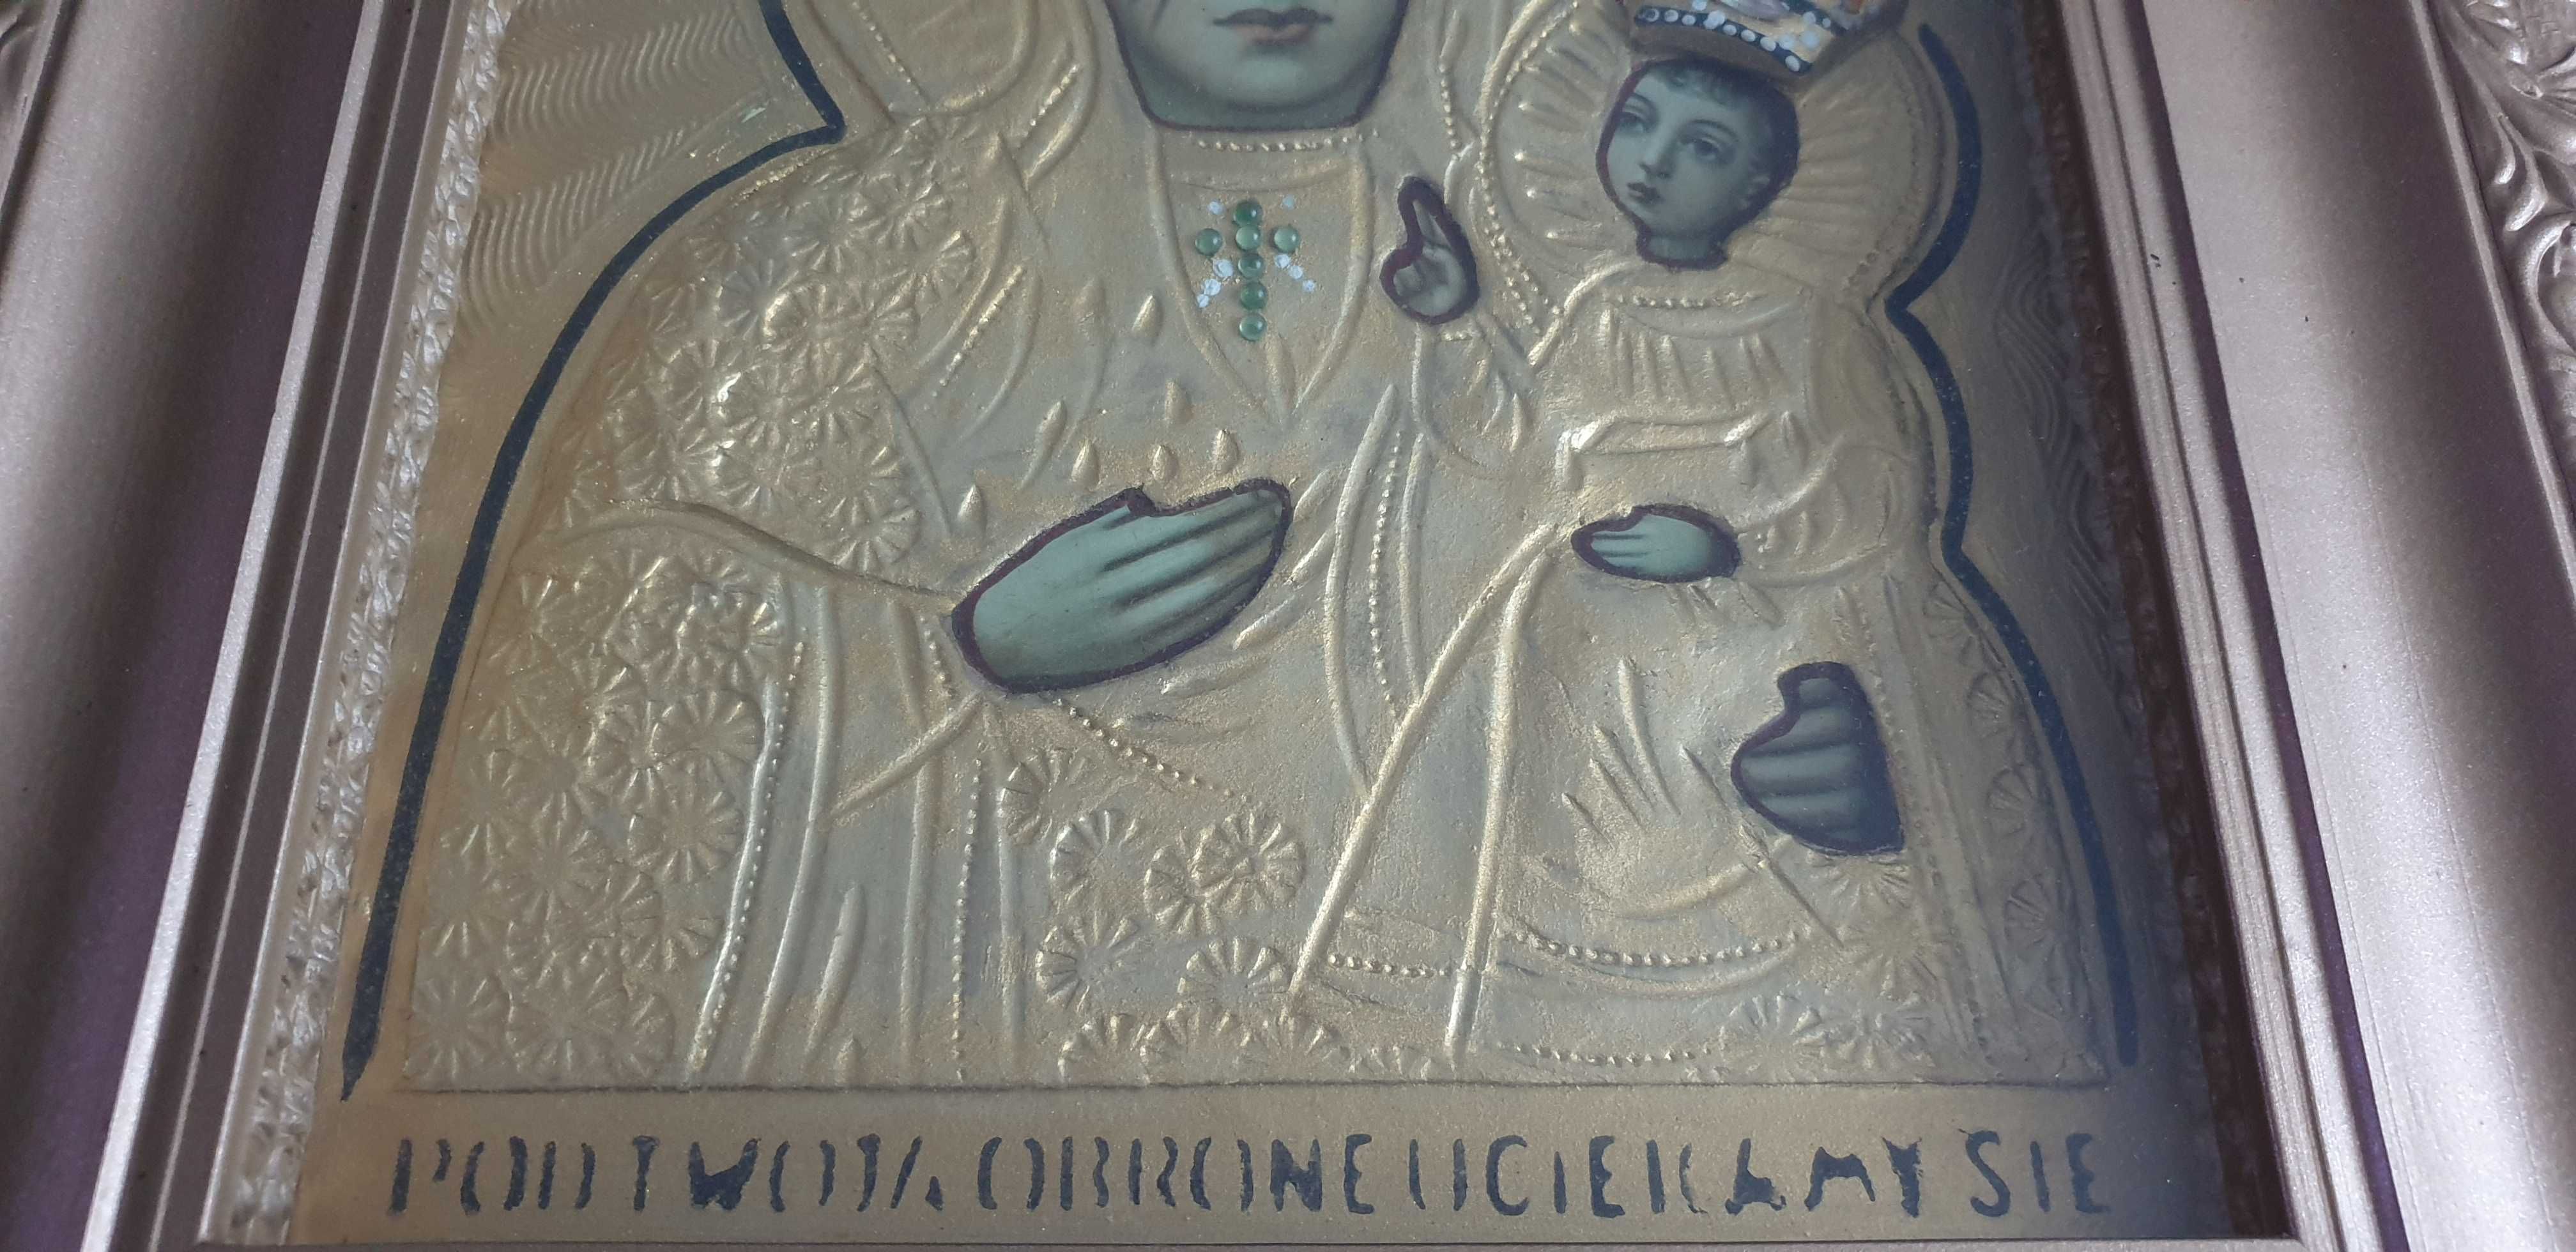 Starocie z Gdyni - Dewocjonalia - obraz Matki Boskiej złocony